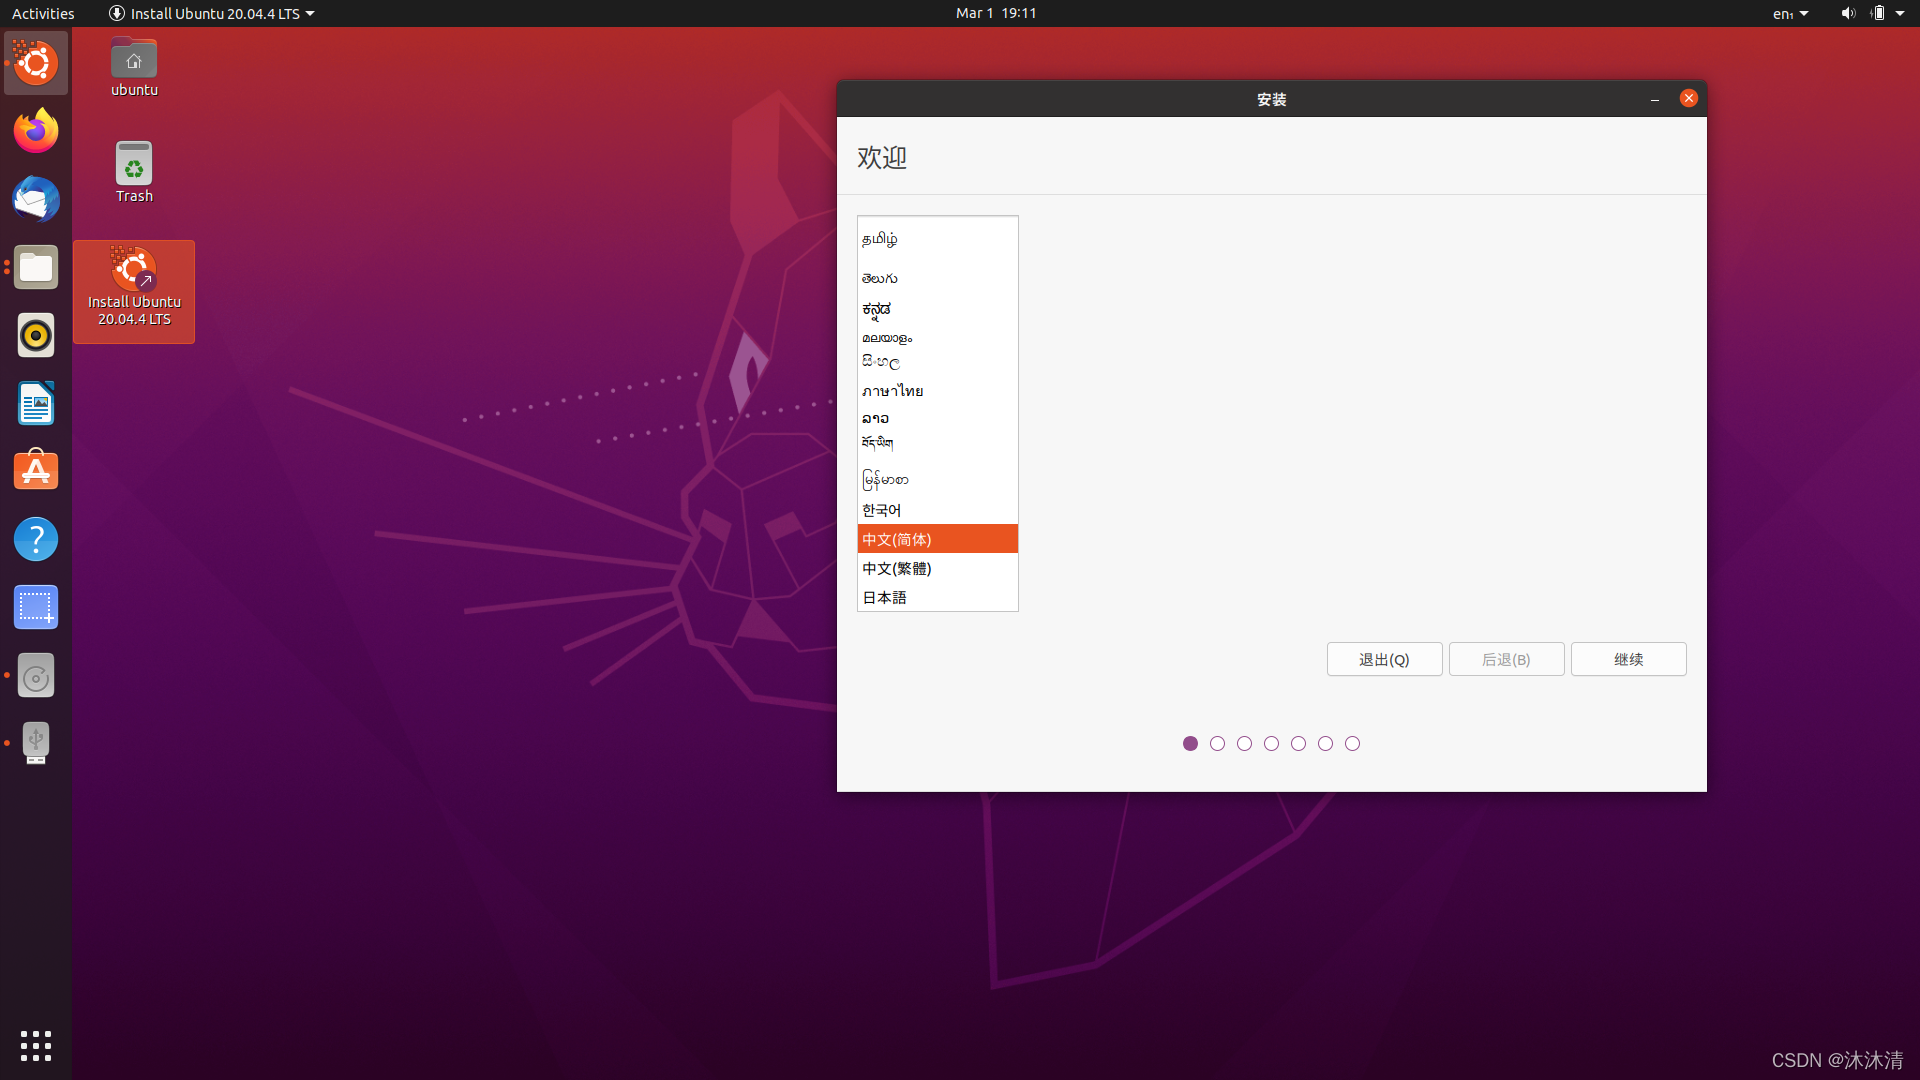 安卓与Ubuntu双系统：安装步骤、优势劣势对比与运用经验分享  第8张